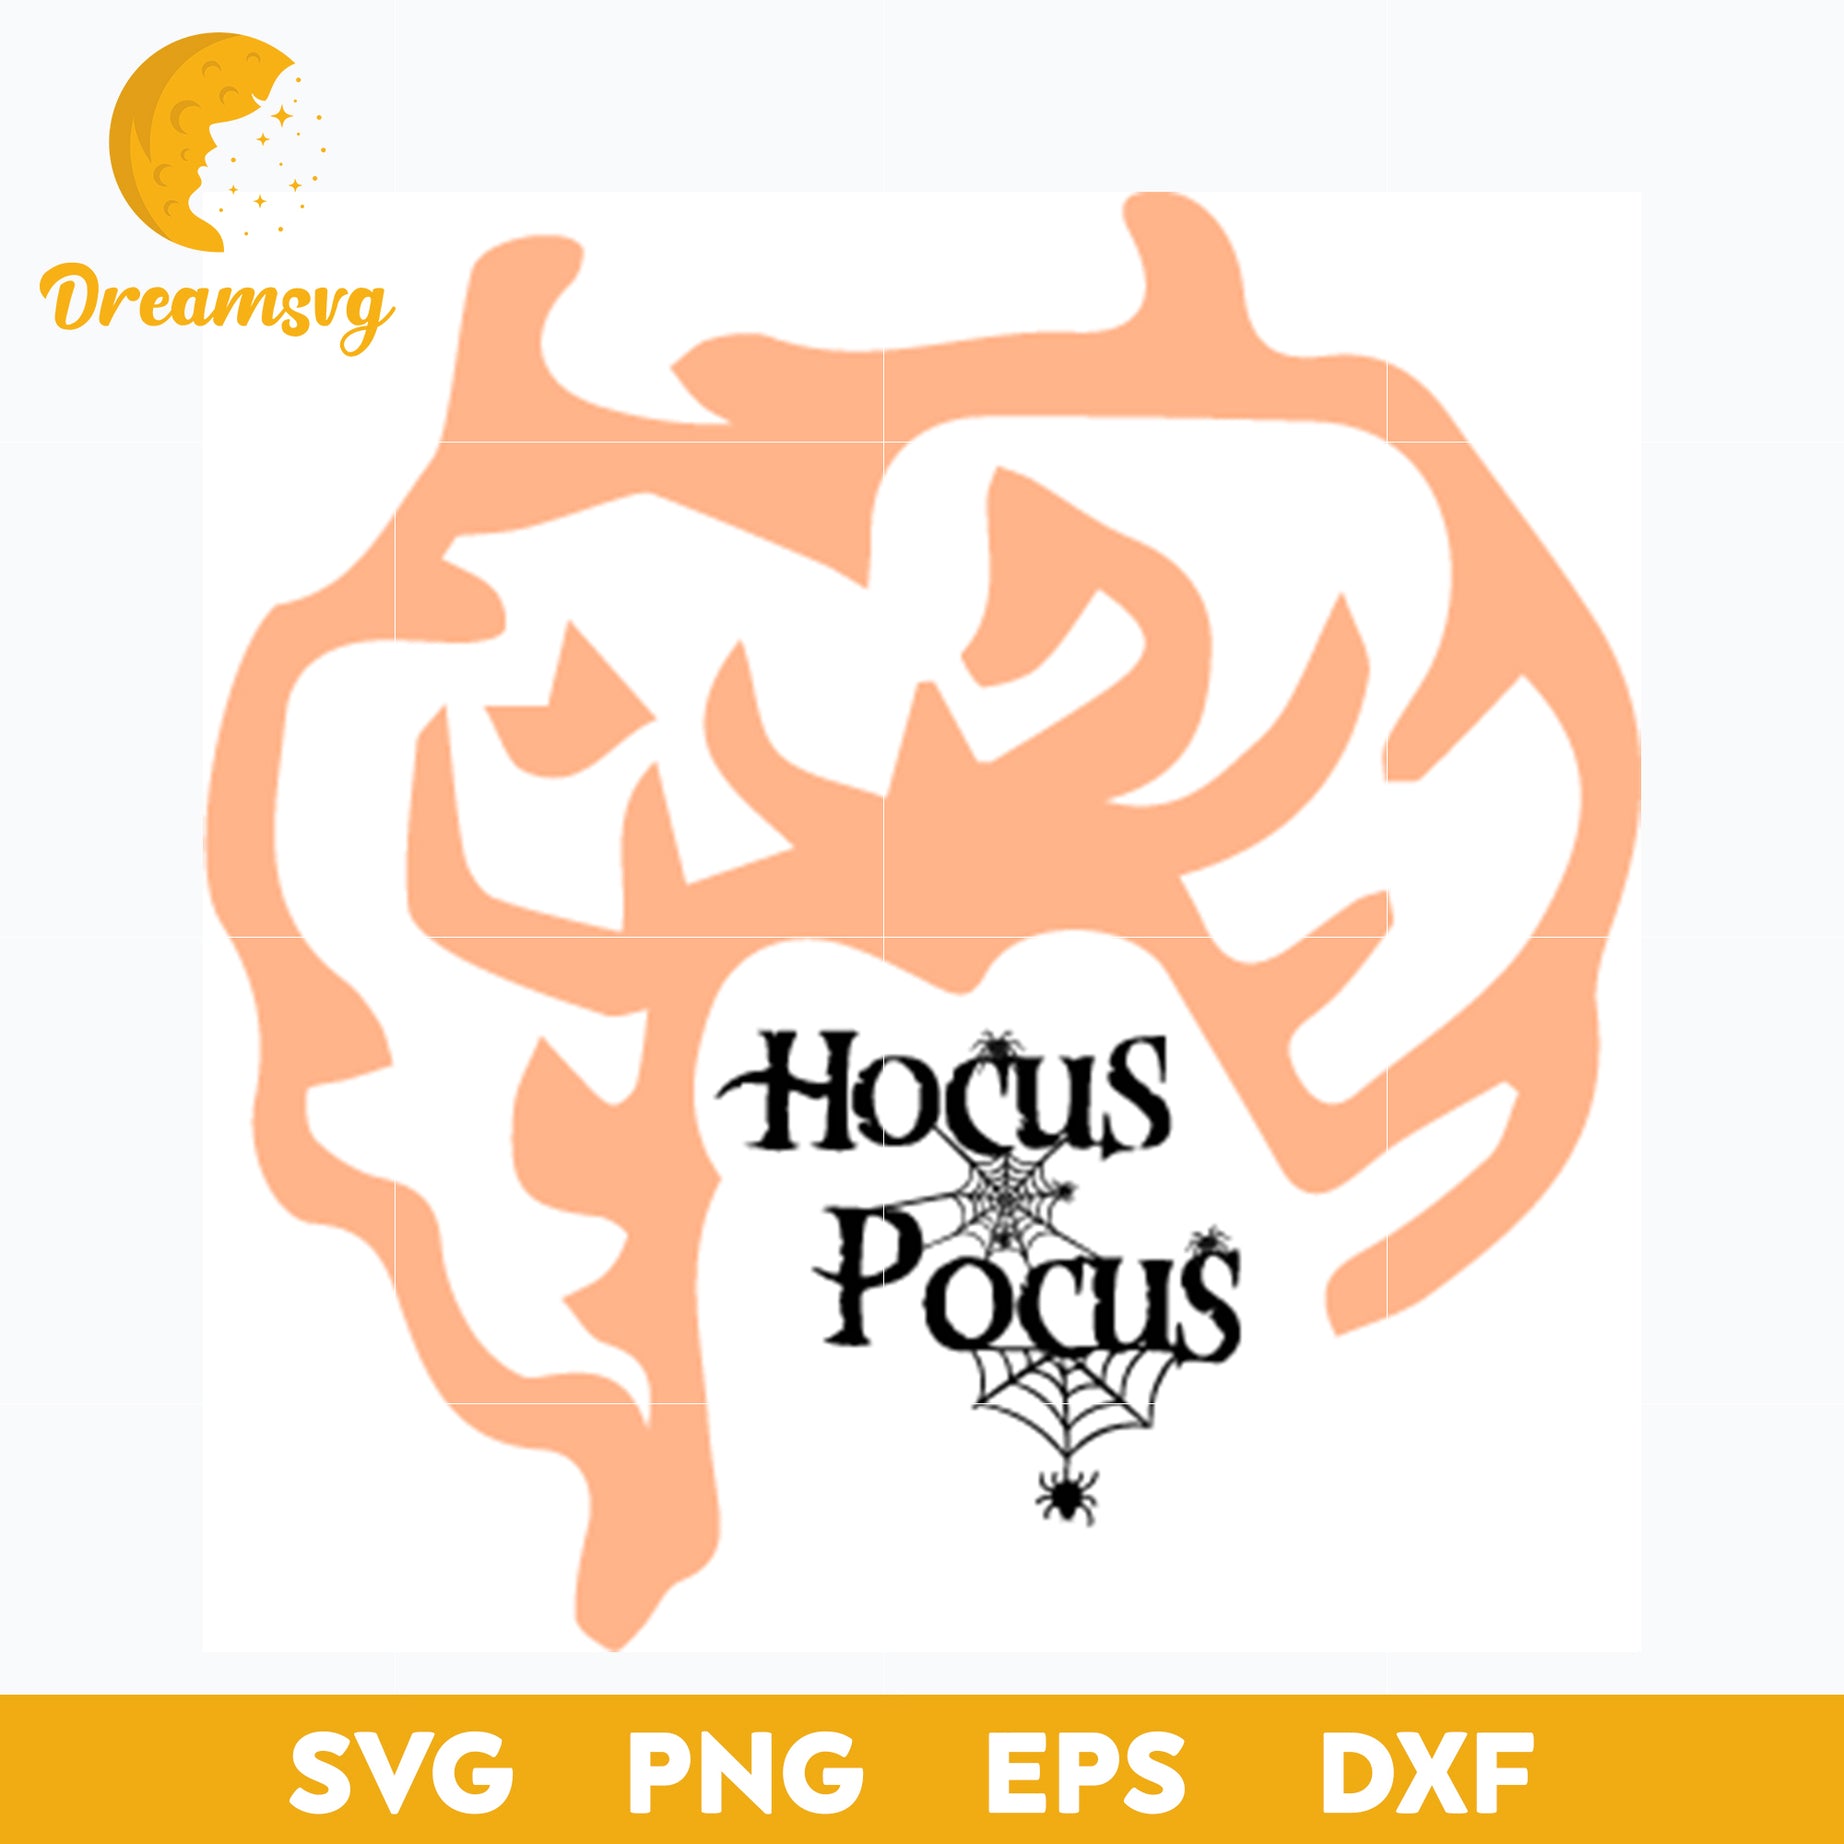 Hocus Pocus SVG, Halloween svg, png, dxf, eps digital file.